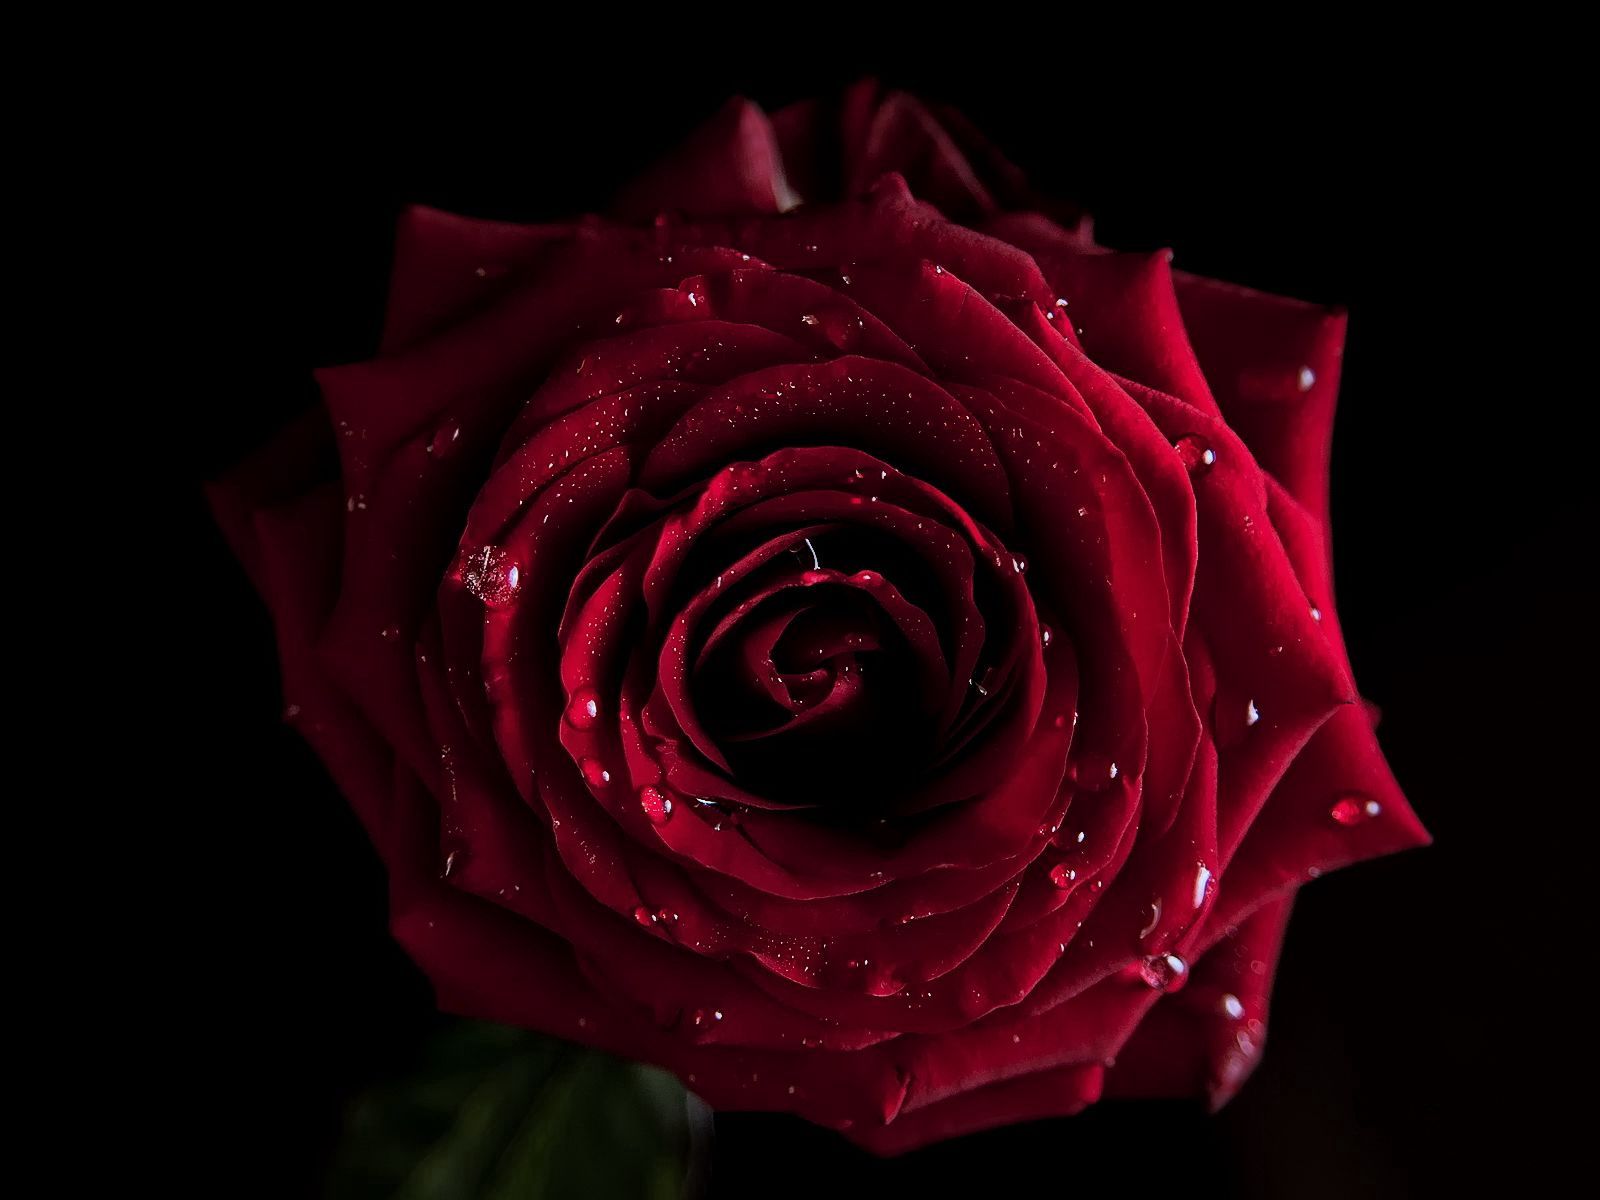 8k Rose Flower Images